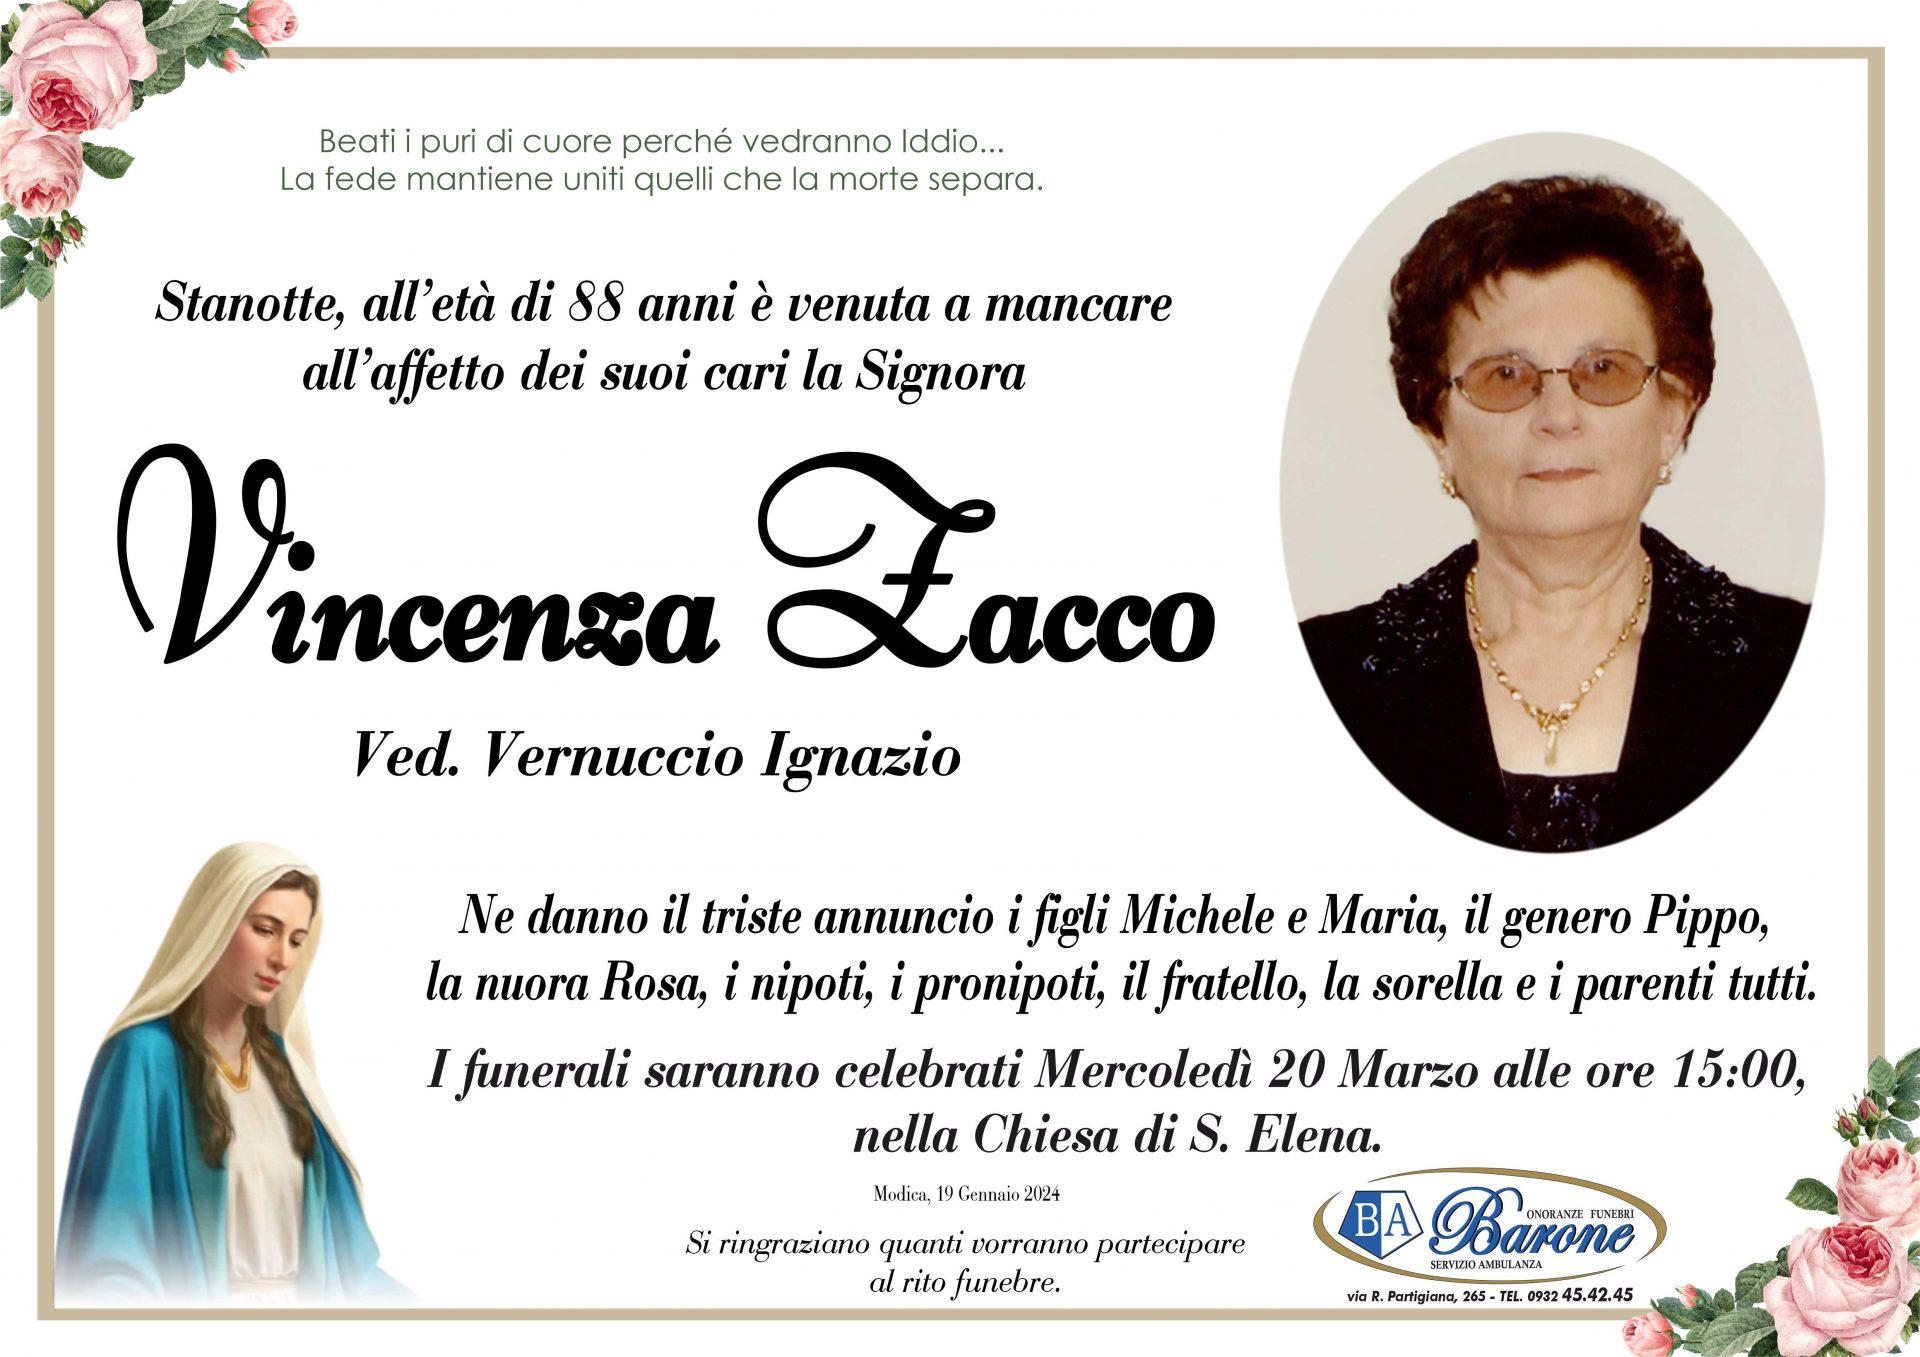 Vincenza Zacco